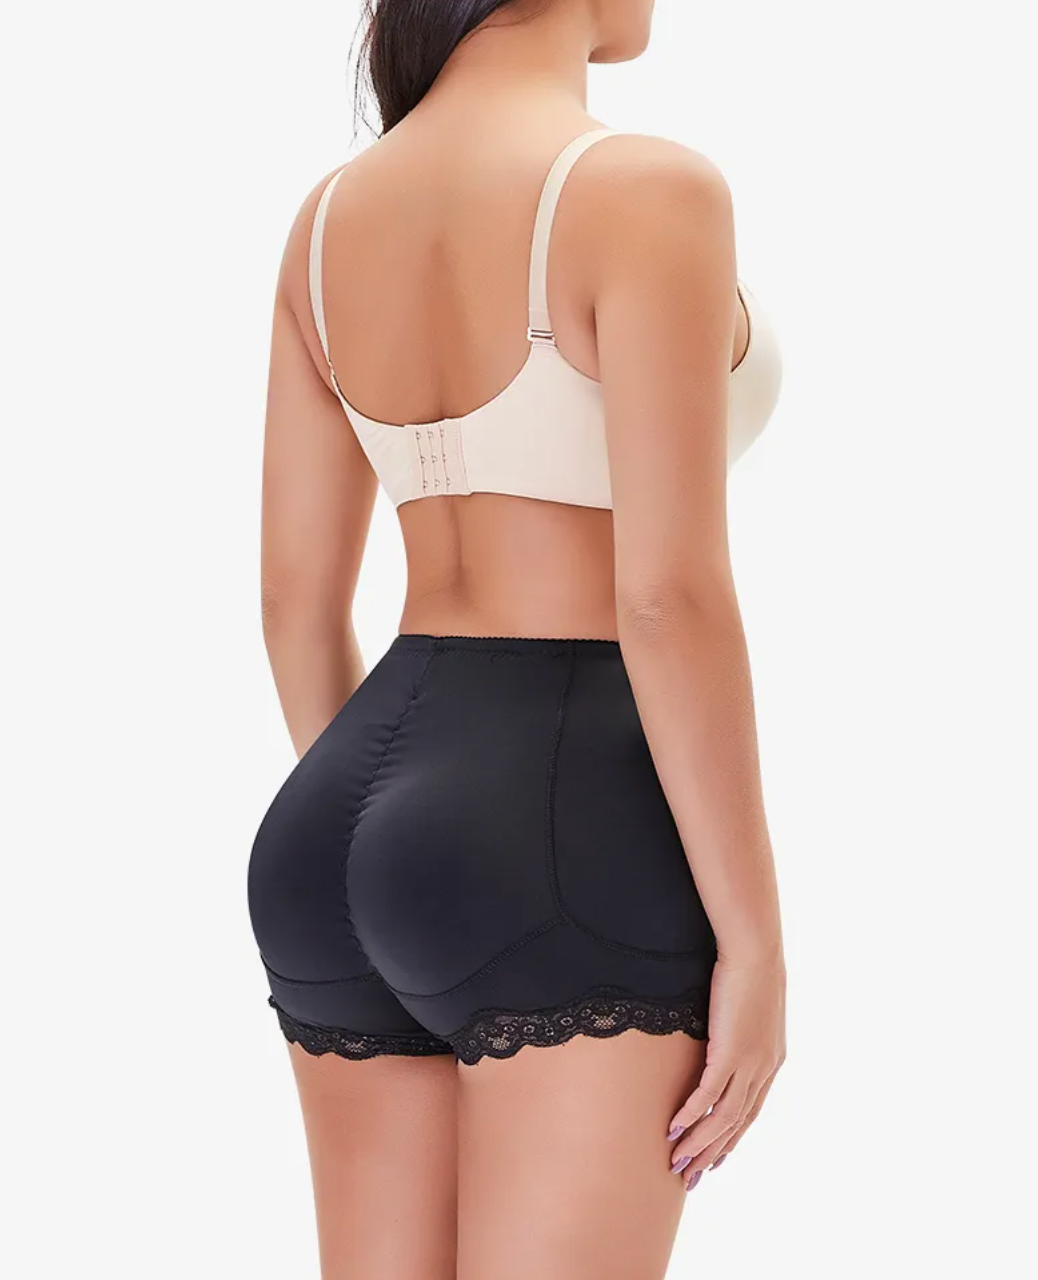 Natural Look Discreet Seamless Lace Hip & Butt Enhancer Underwear Shapewear  -USA